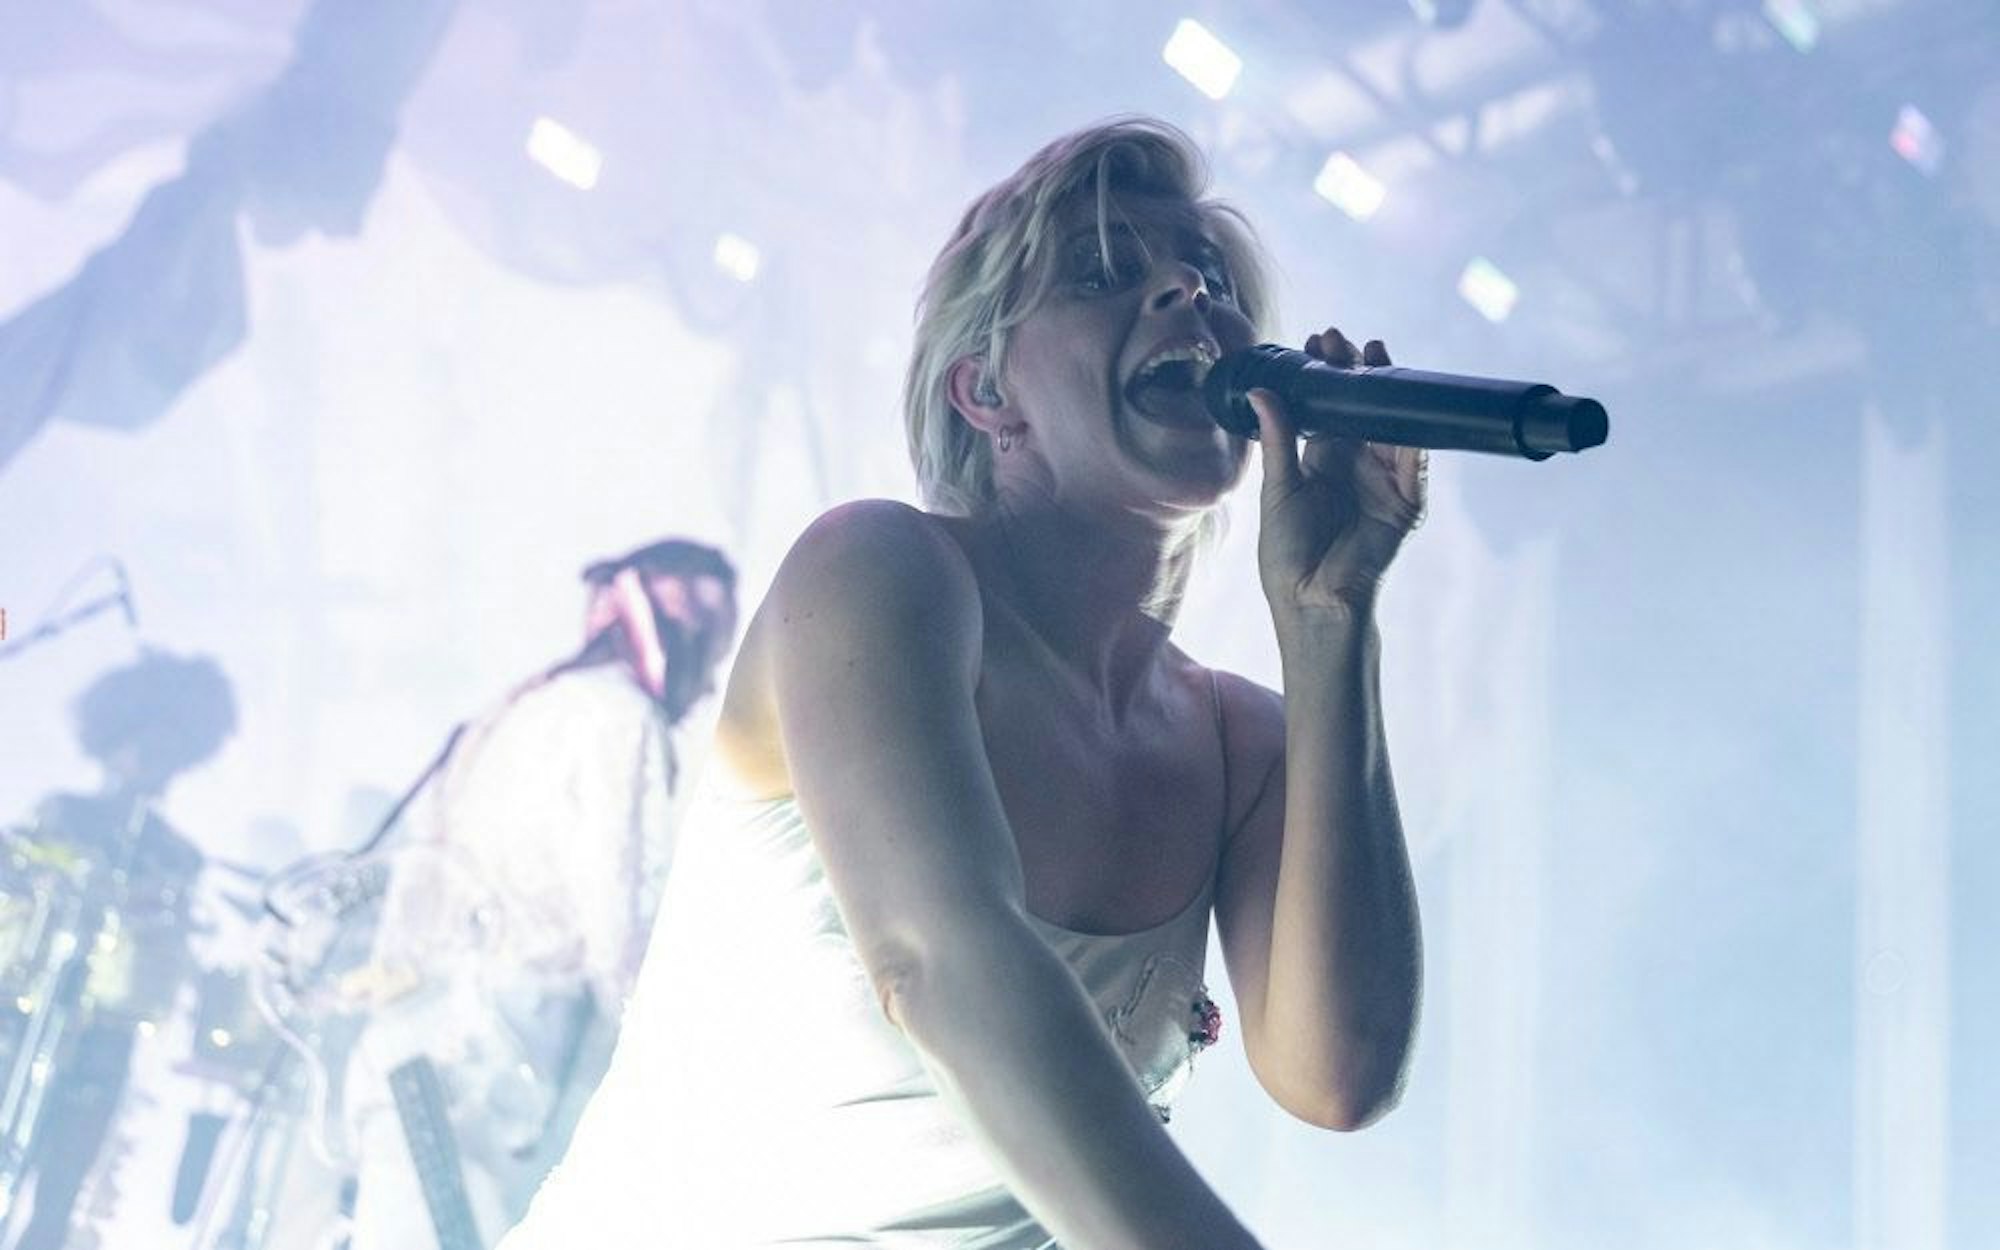 Die schwedische Sängerin Robyn im Jahr 2019 auf der Bühne des Kölner Palladiums. Sie trägt ein silbernes Negligé und singt in ein Mikrofon.